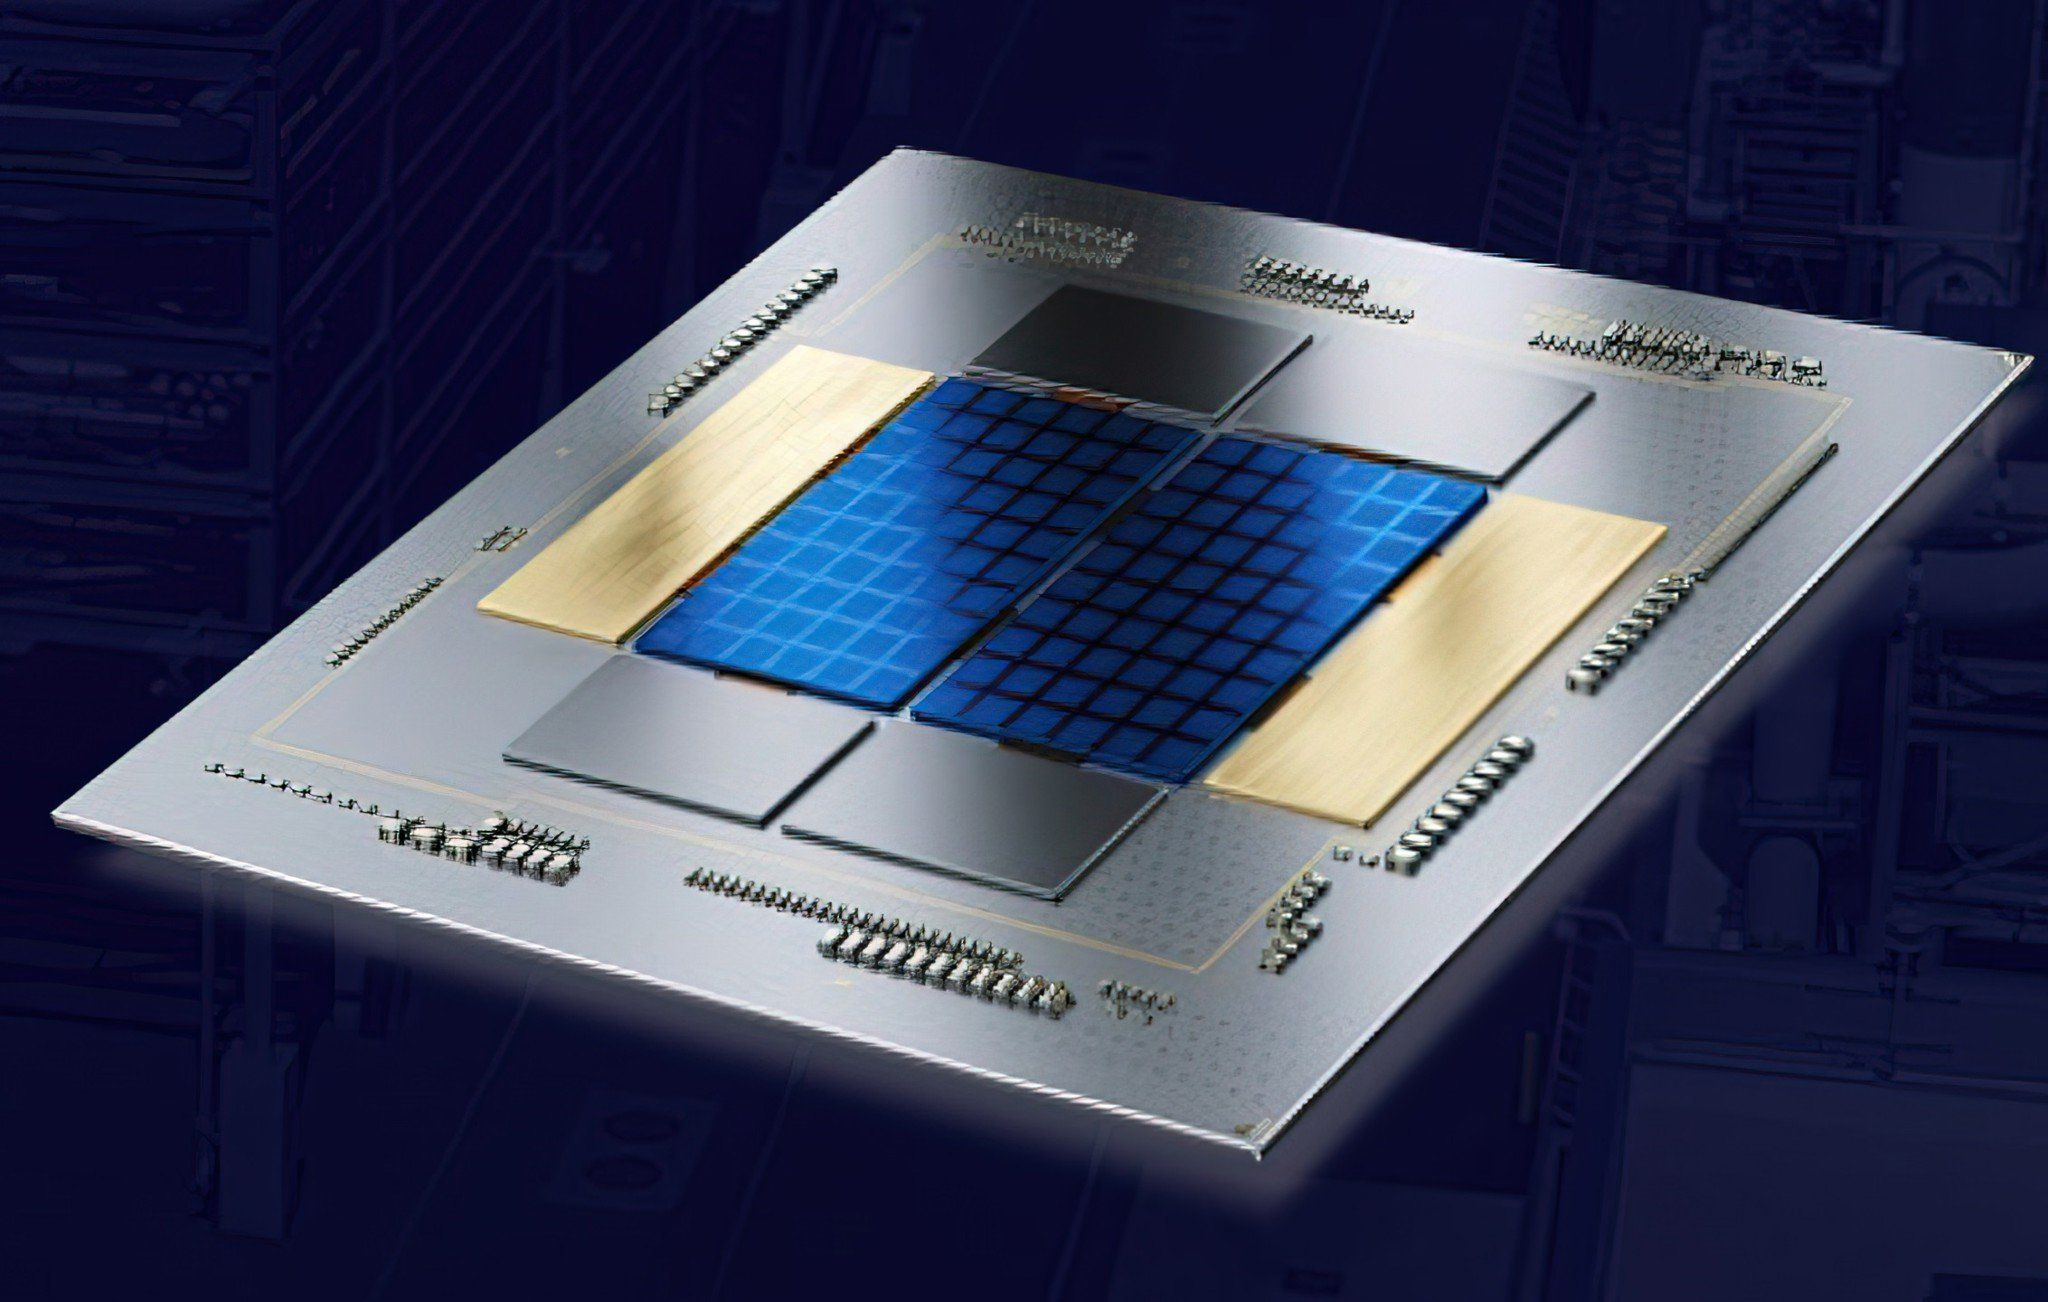 Giữ vững truyền thống 2 CPU 1 socket, Intel thế hệ 14 “Meteor Lake” sẽ chuyển sang socket LGA1851